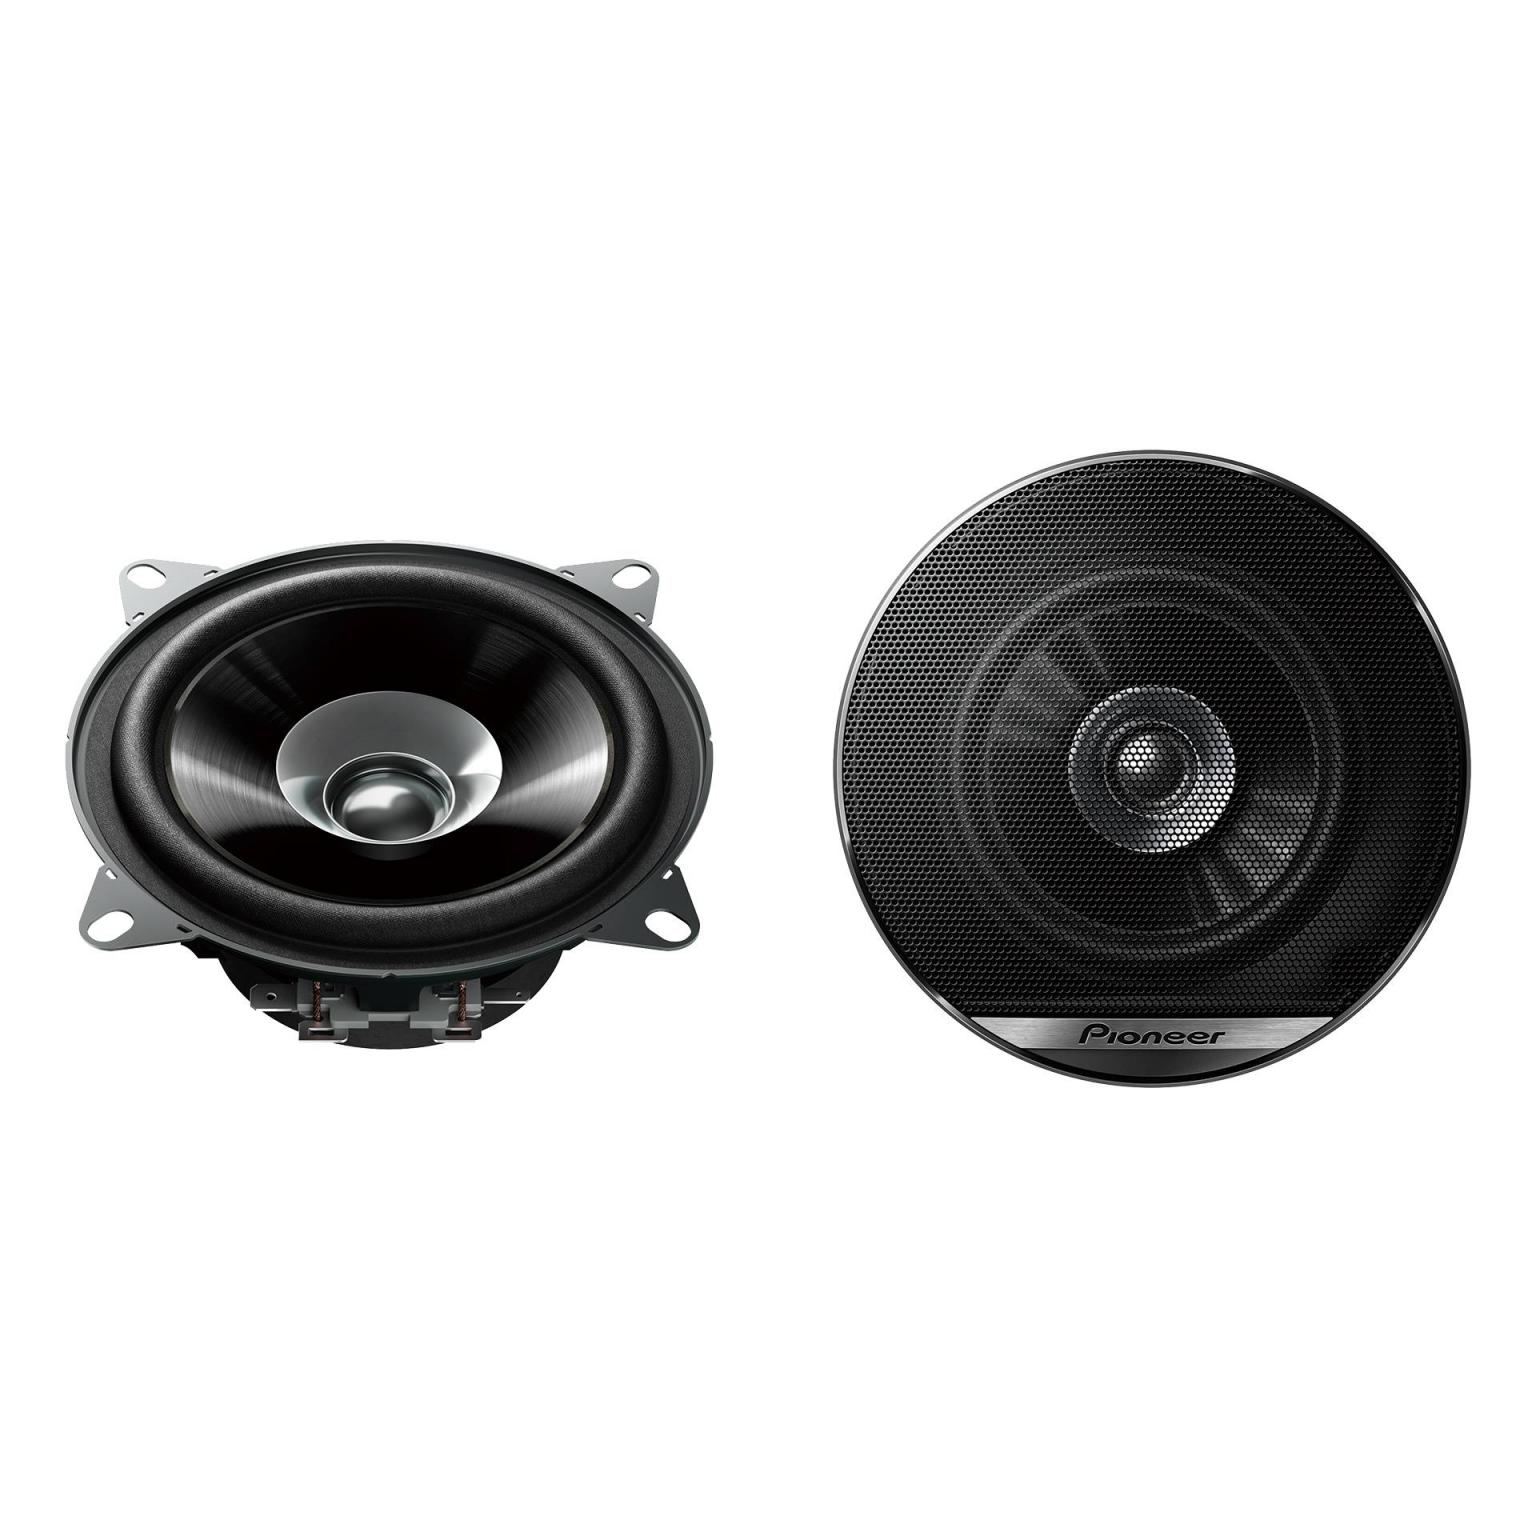 Fullrange speakers - 4 Inch - Pioneer